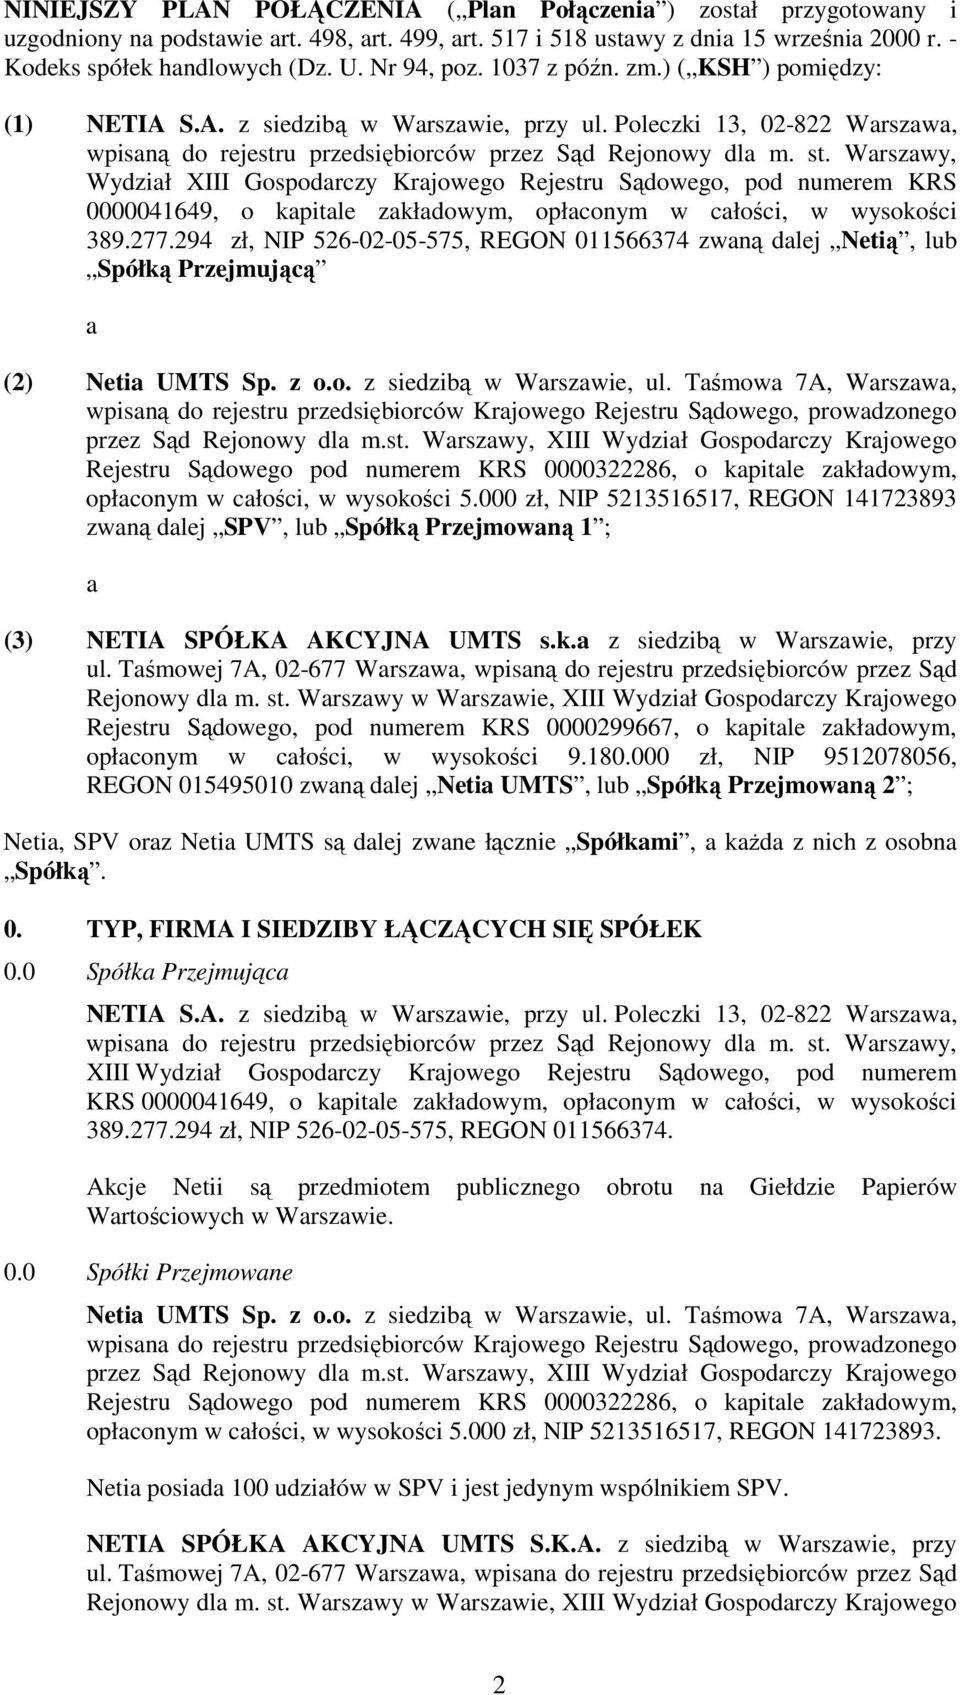 Warszawy, Wydział XIII Gospodarczy Krajowego Rejestru Sądowego, pod numerem KRS 0000041649, o kapitale zakładowym, opłaconym w całości, w wysokości 389.277.